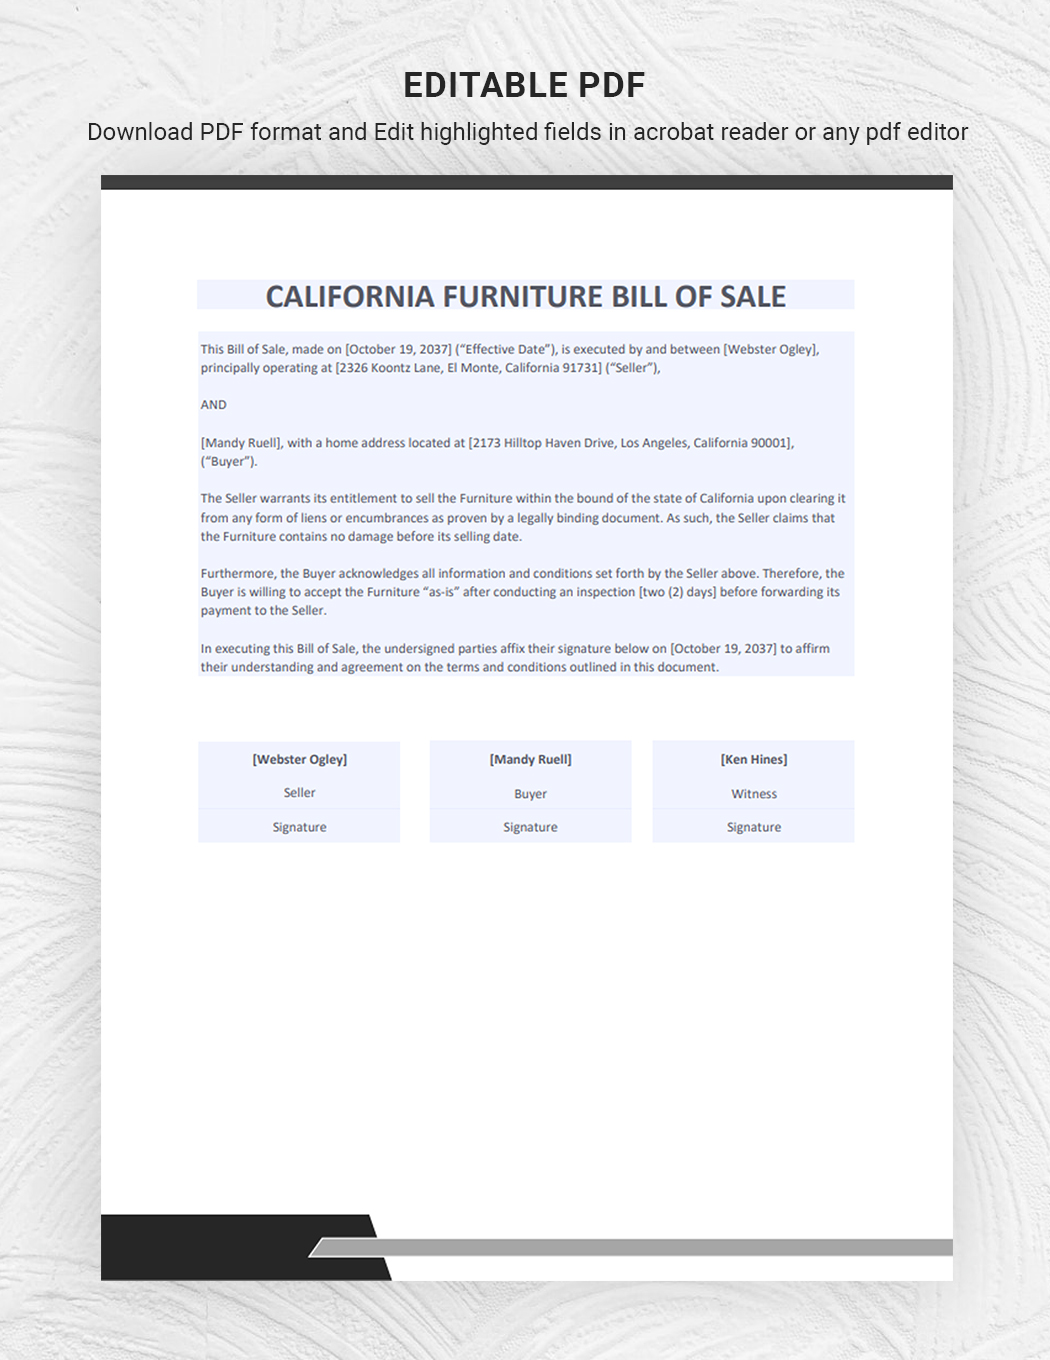 California Furniture Bill of Sale Template